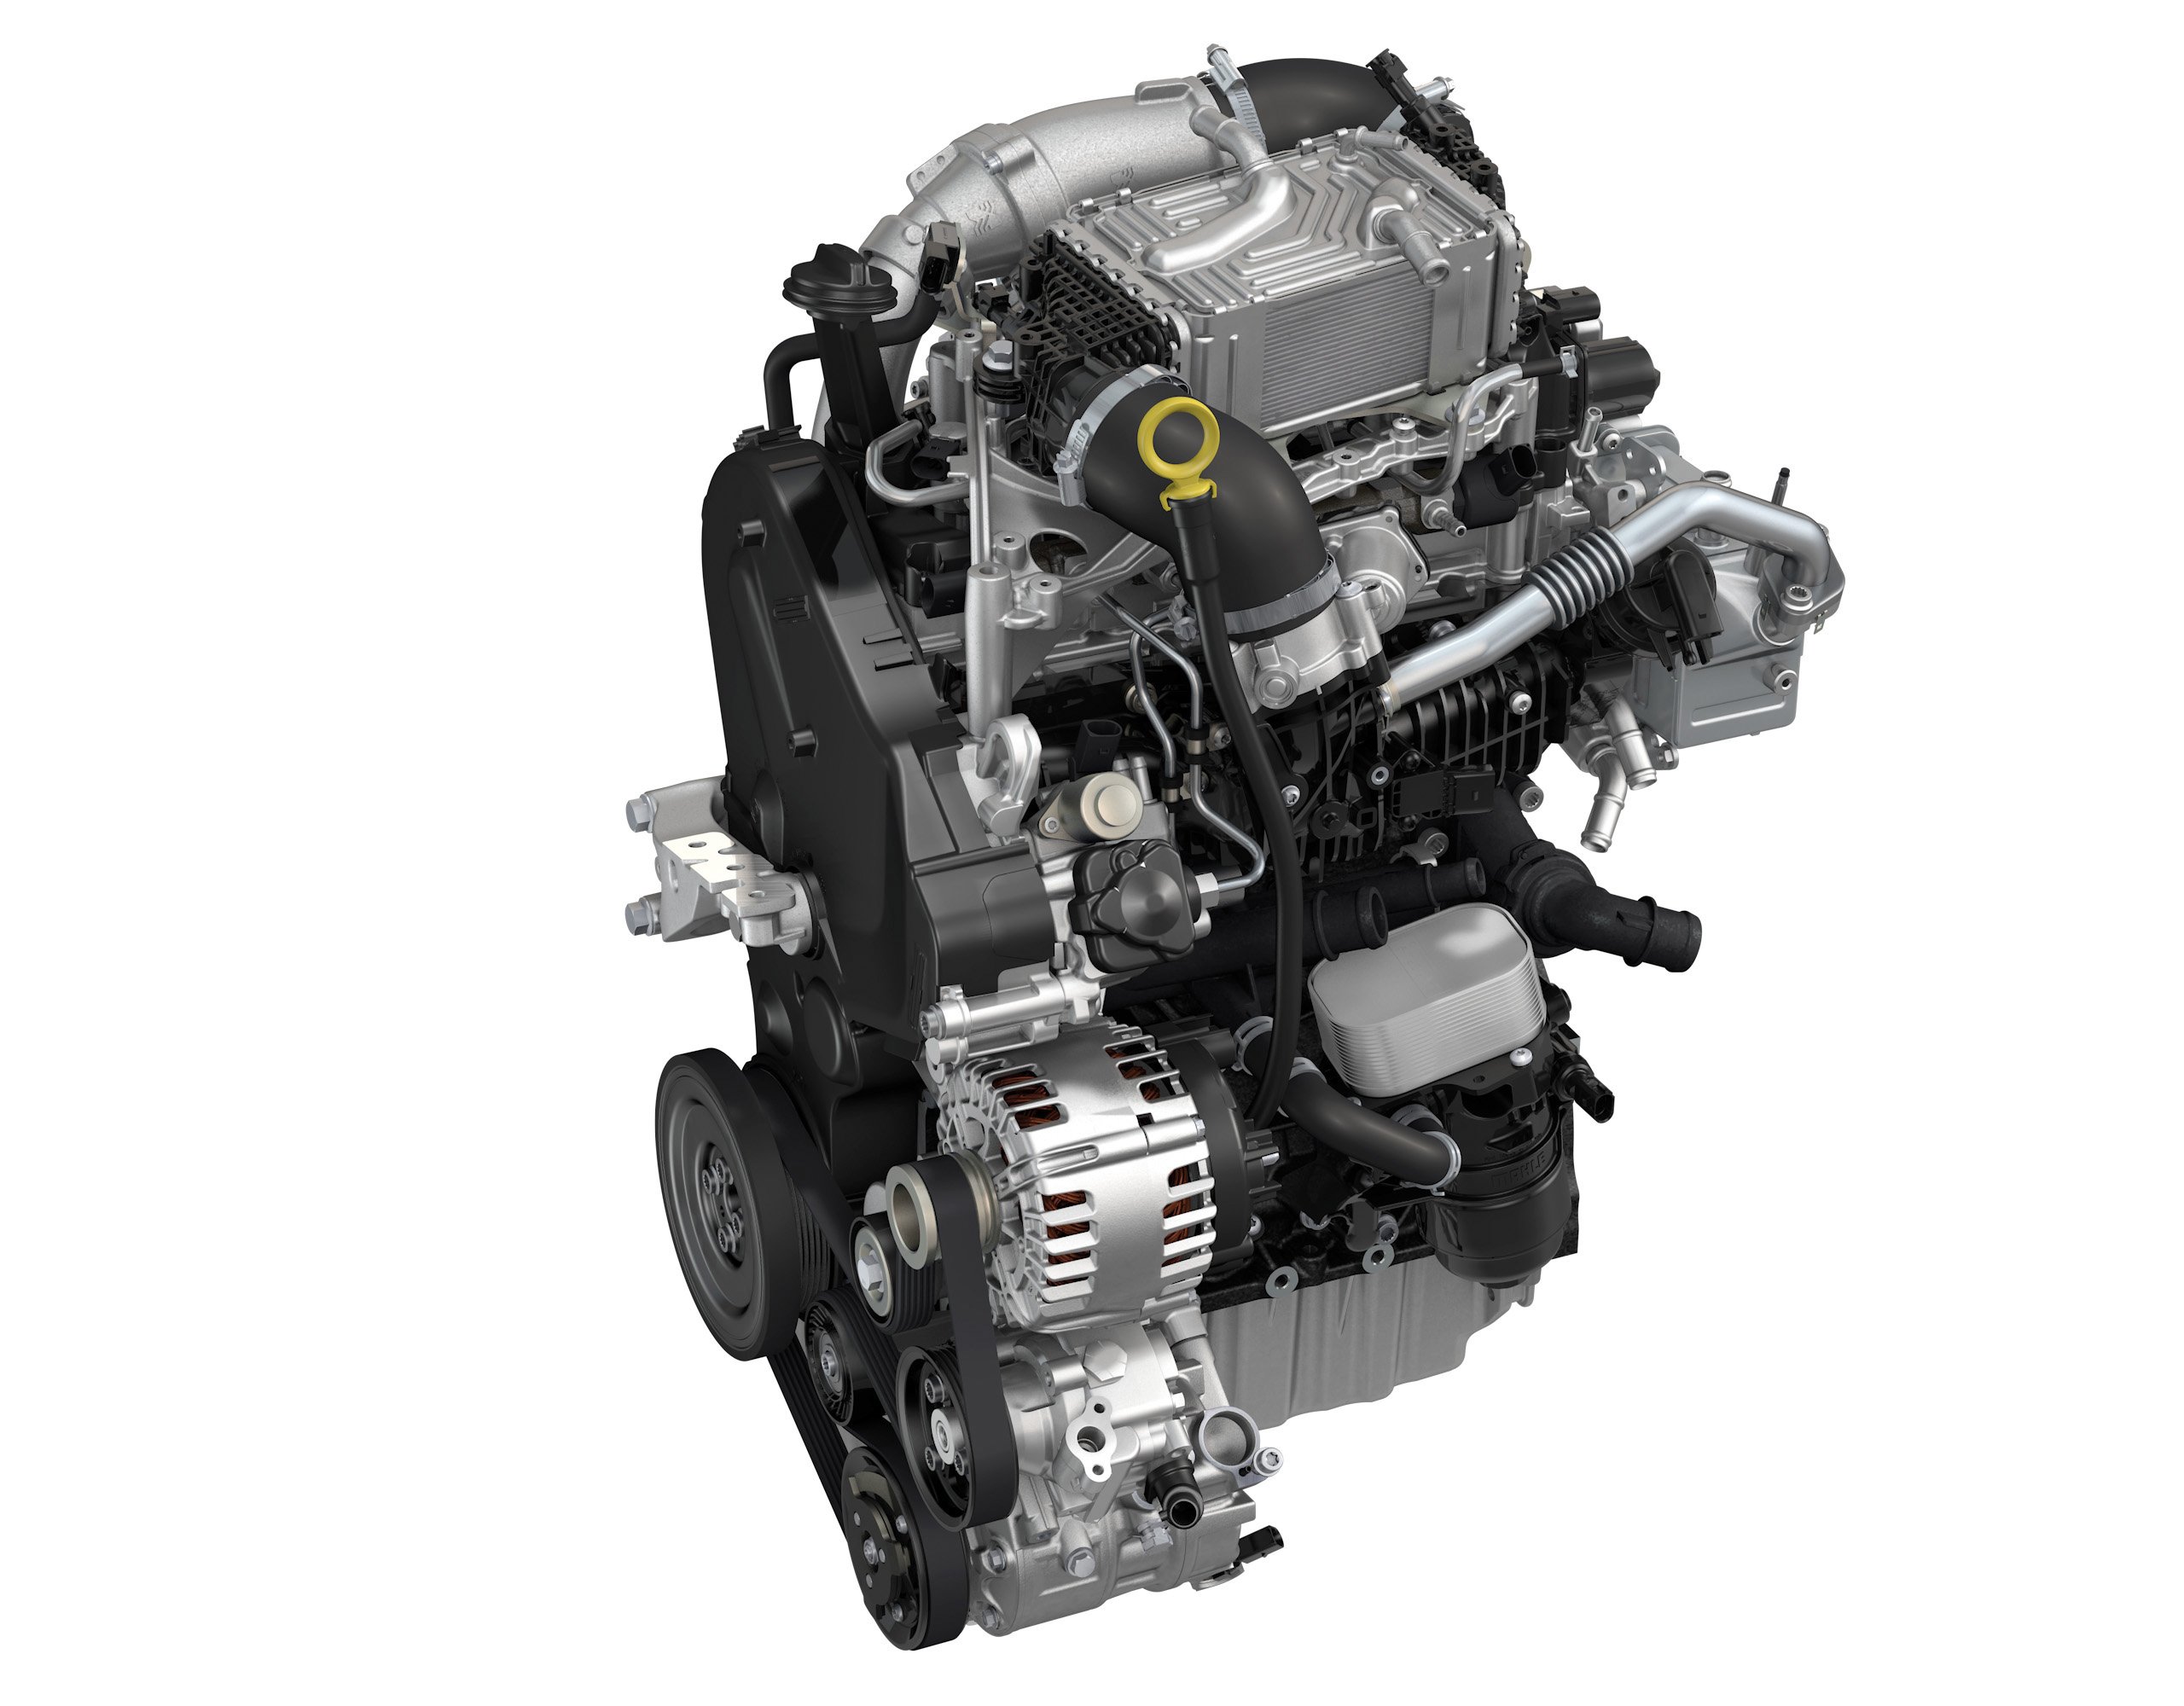 Дизель фольксваген 2.5 л. Двигатель Крафтер 2.0 дизель. 2.0 TDI 140 Л.С дизель. Двигатель 1.6 дизель Фольксваген. Volkswagen с двигателем 2.0 TDI.